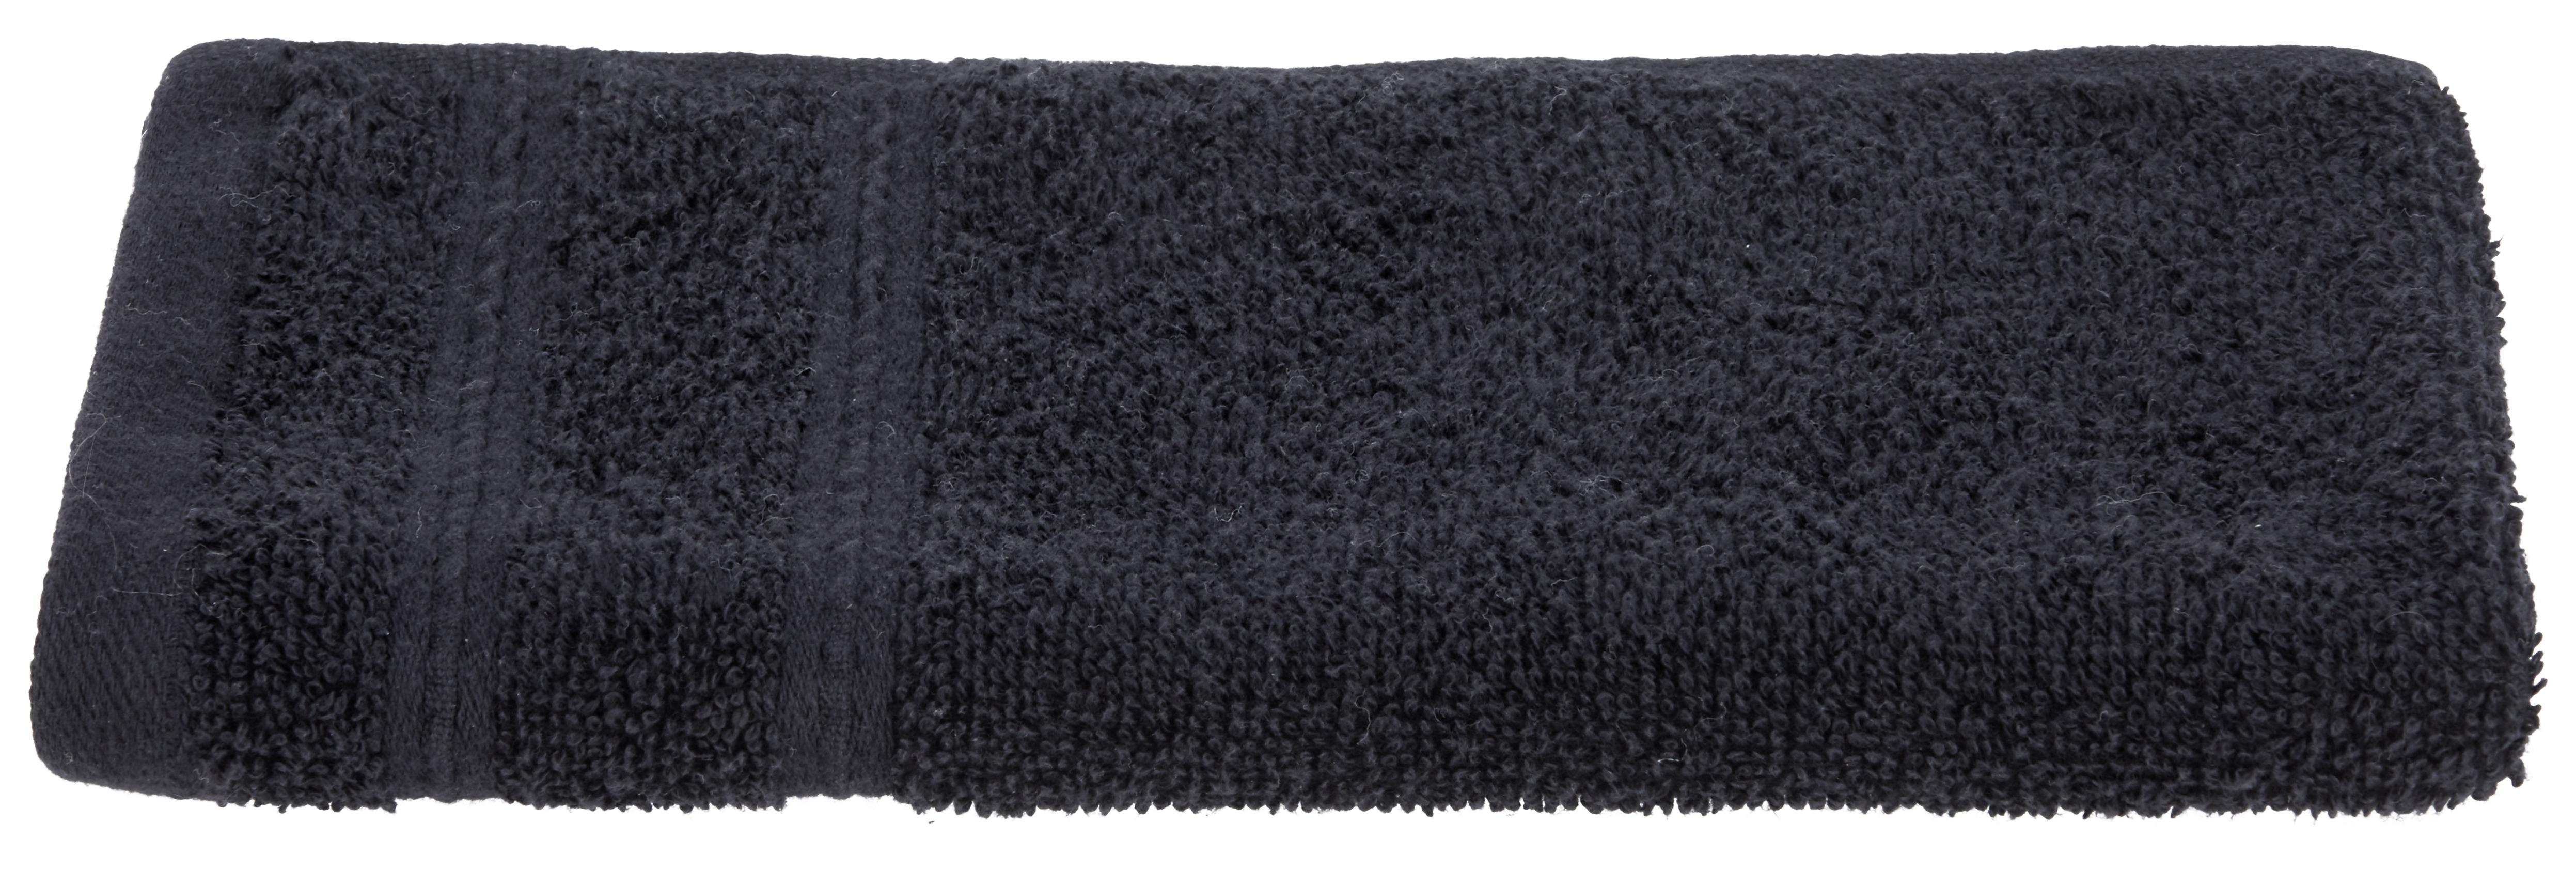 Ručník Pro Hosty Melanie, 30/50cm, Černá - černá, textil (30/50cm) - Modern Living